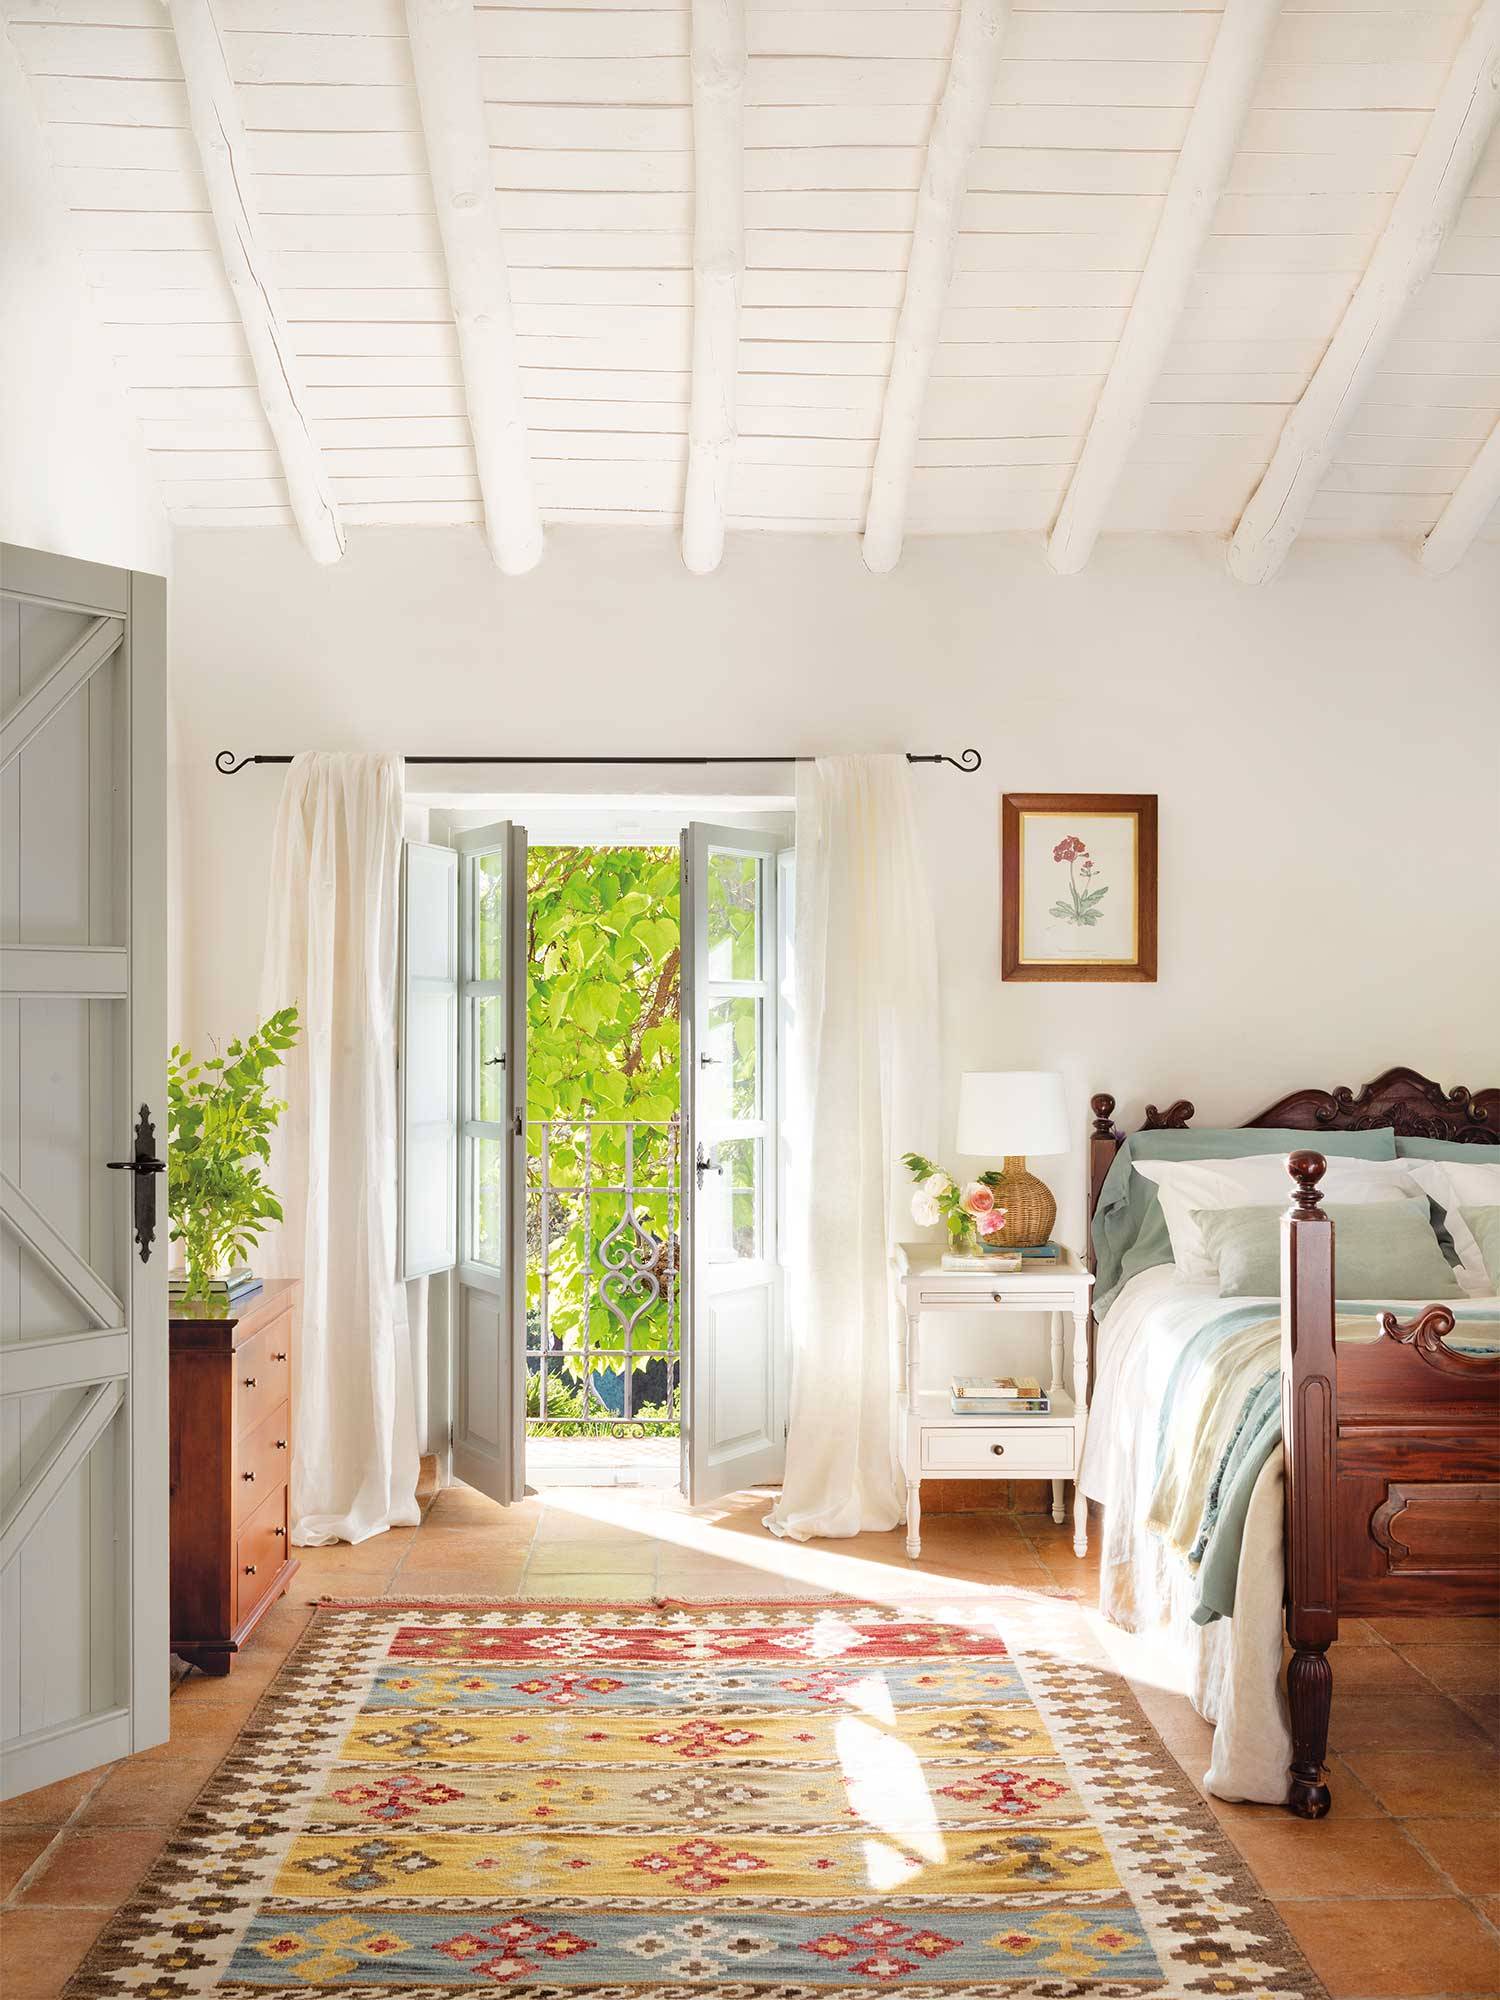 Dormitorio rústico con viguería pintada de blanco y suelo de barro.